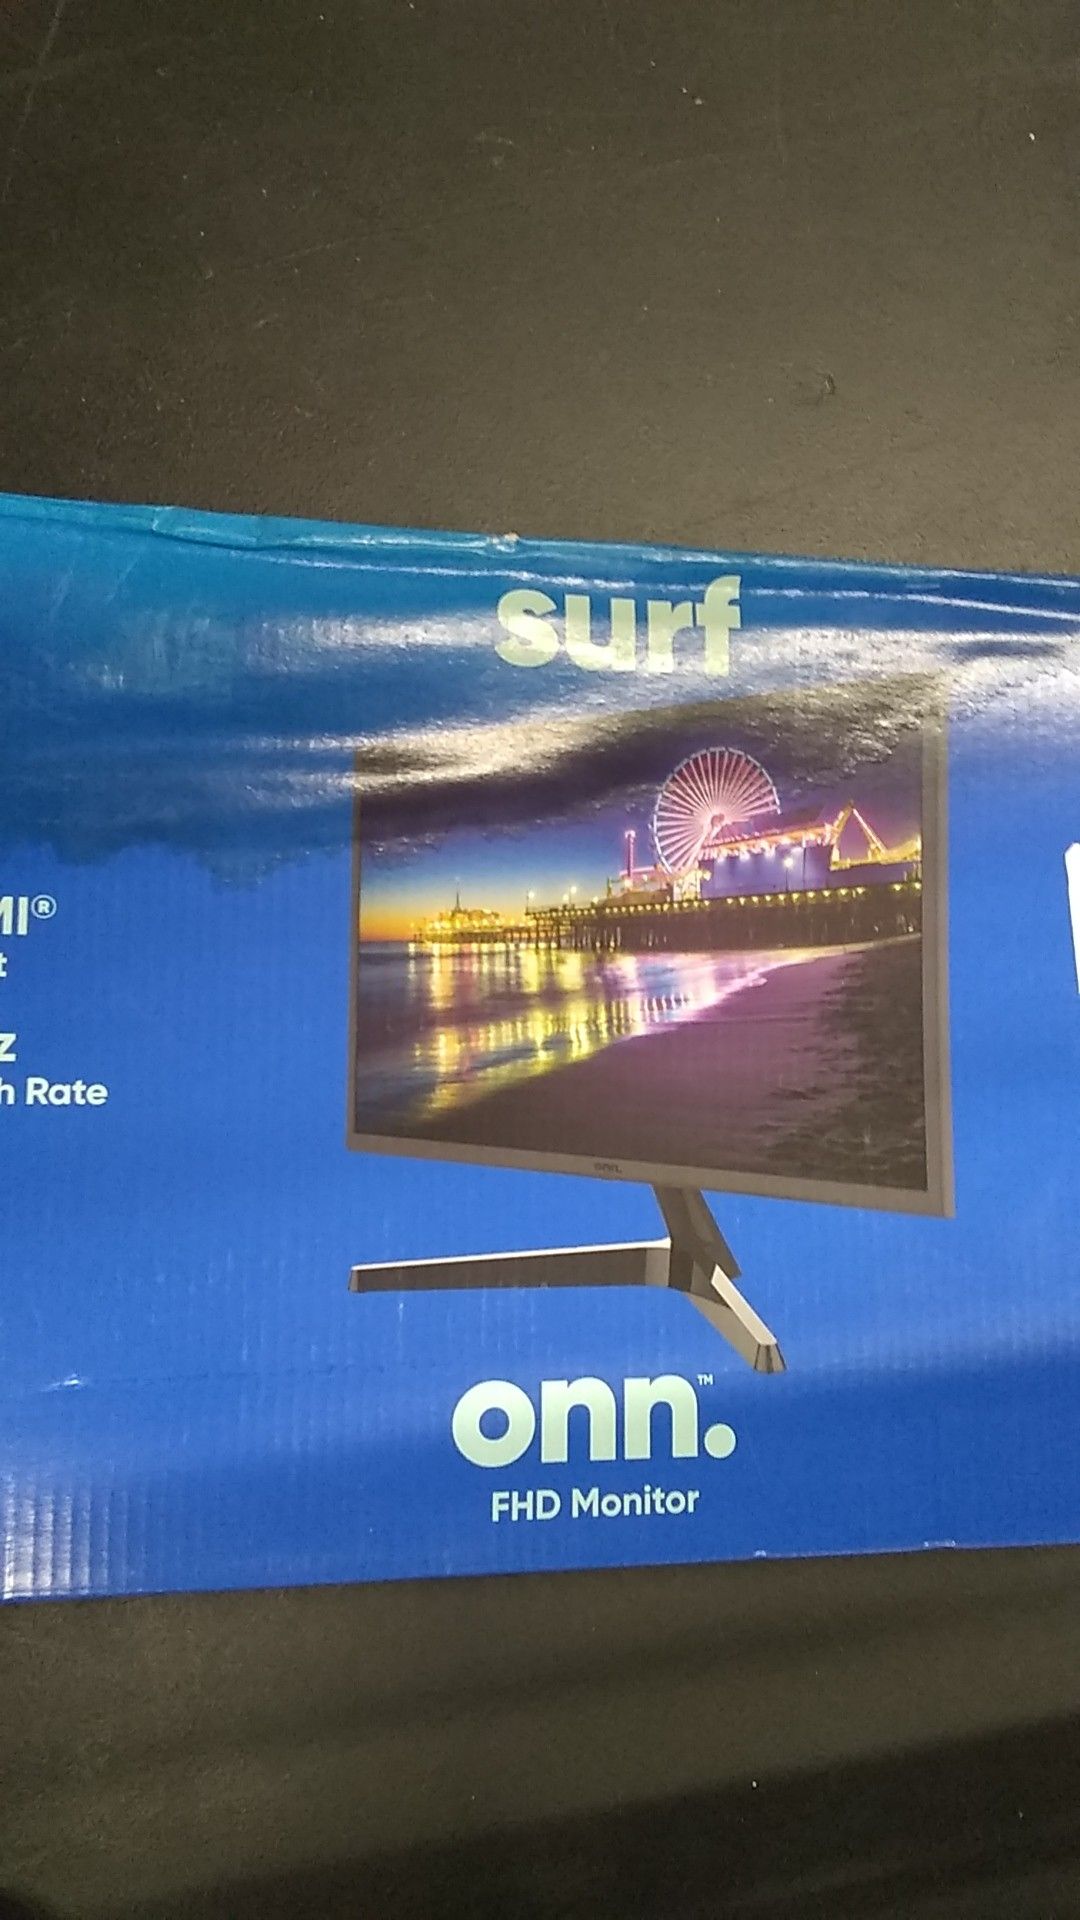 SURF onn. FHD Monitor. 24" (retail $99)